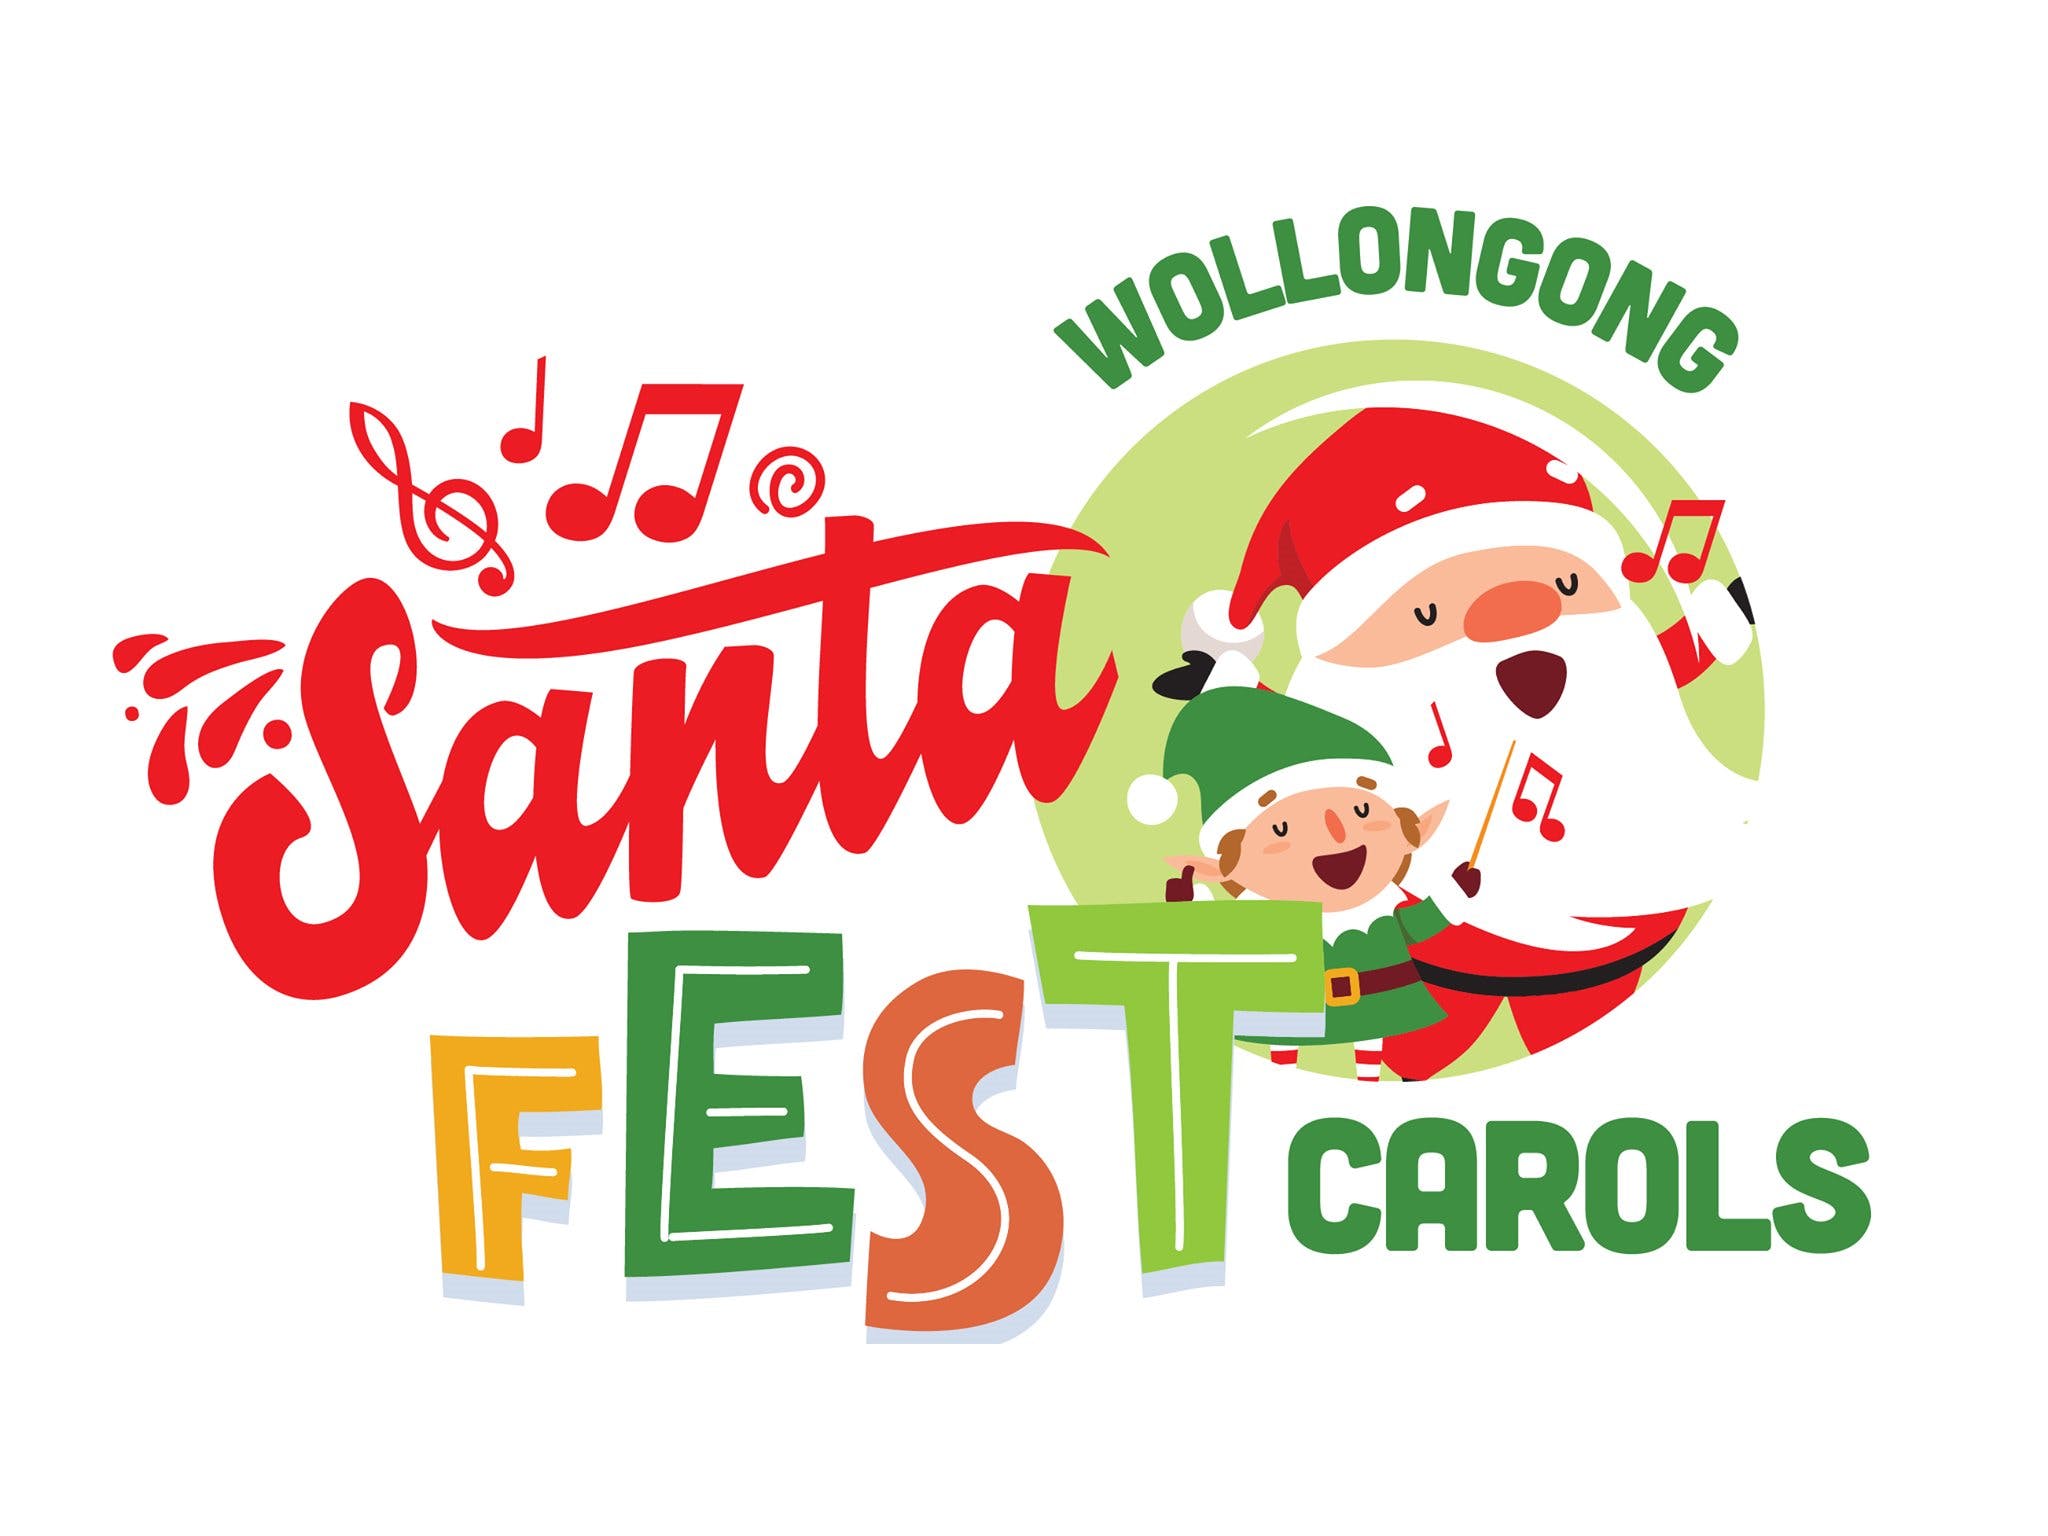 McDonalds Illawarra Santa Fest Carols Wollongong - thumb 0